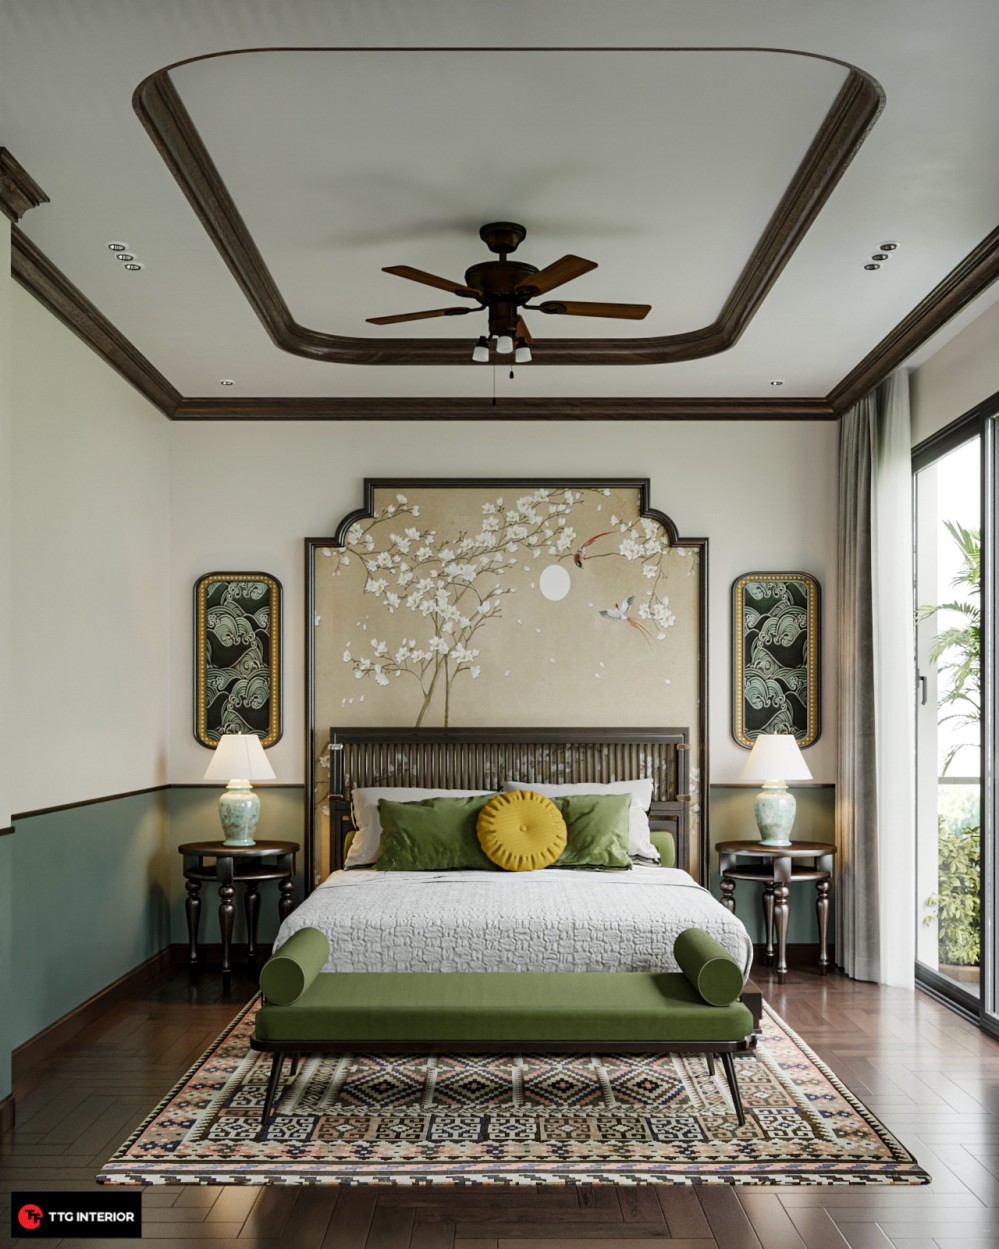 Giấy dán tường họa tiết cổ điển trong thiết kế nội thất phòng ngủ Indochine